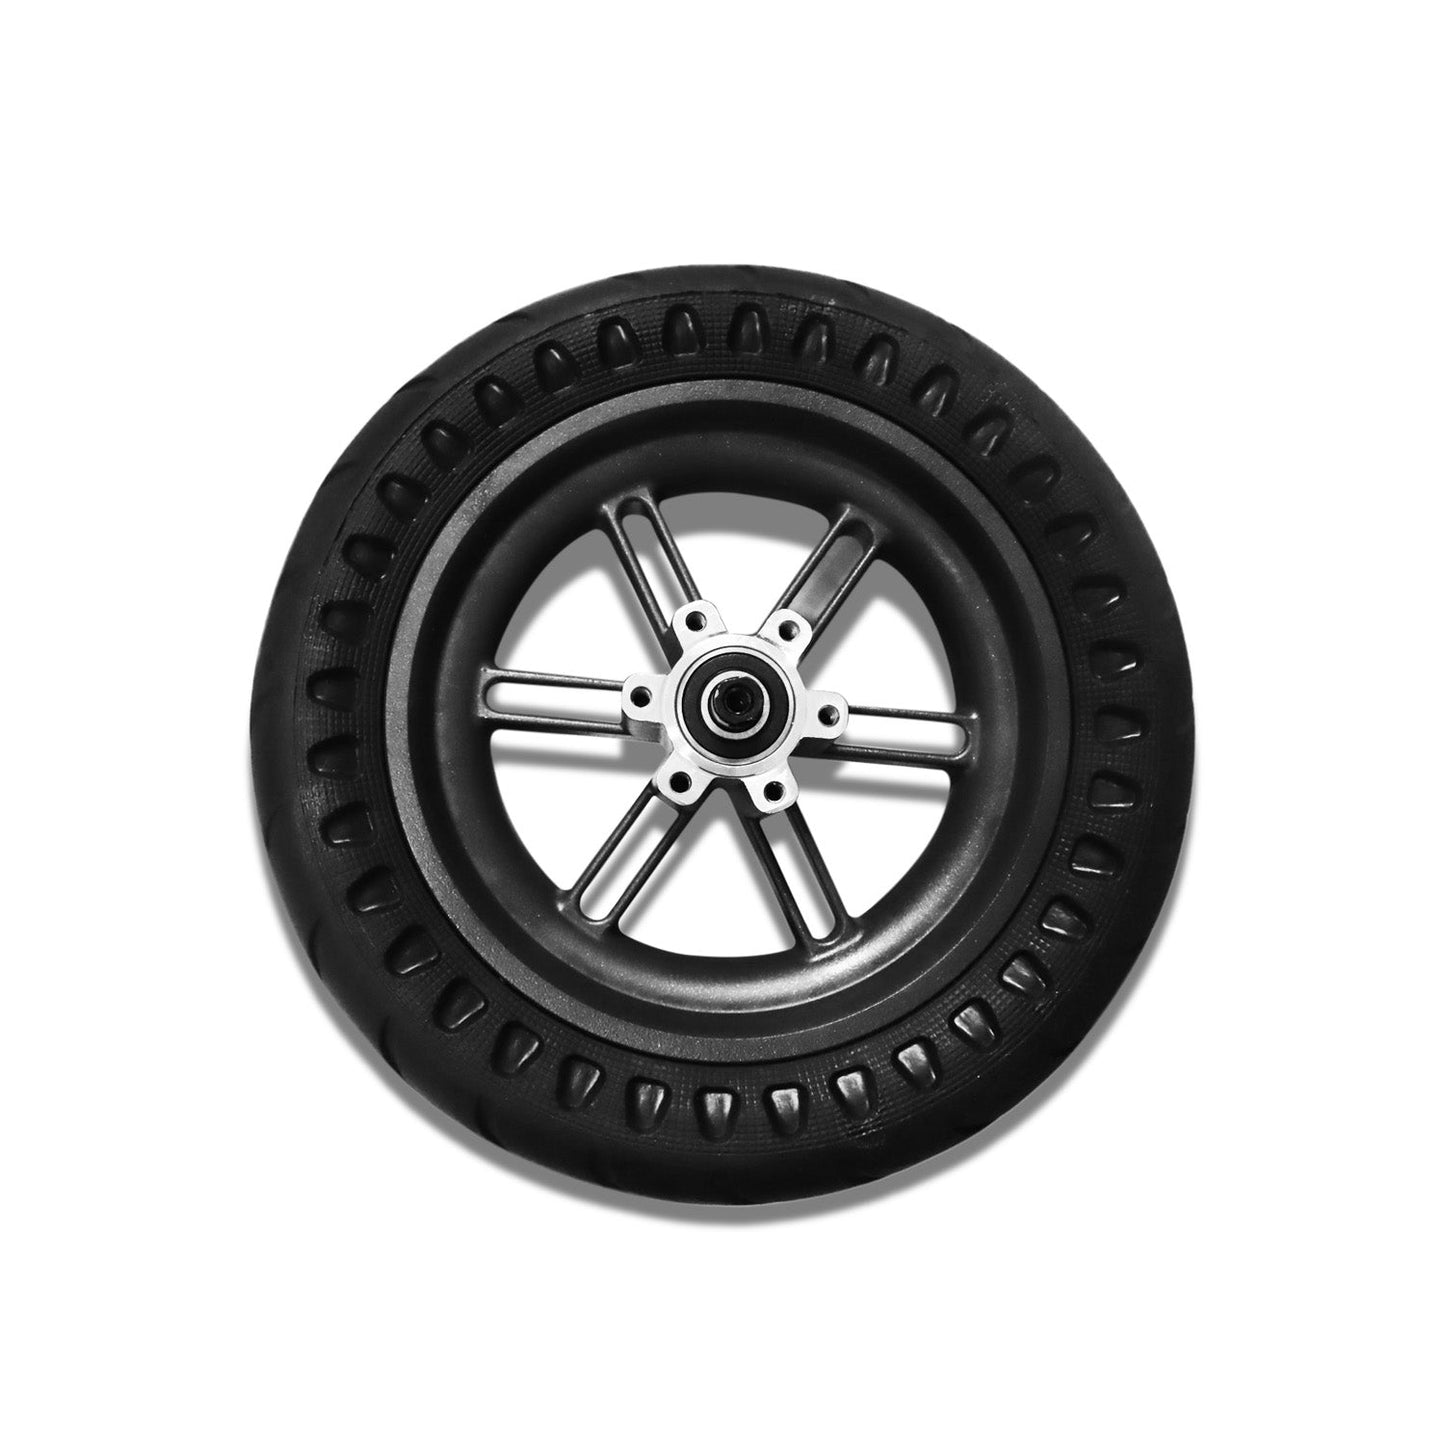 Hiboy S2R Rear Wheel